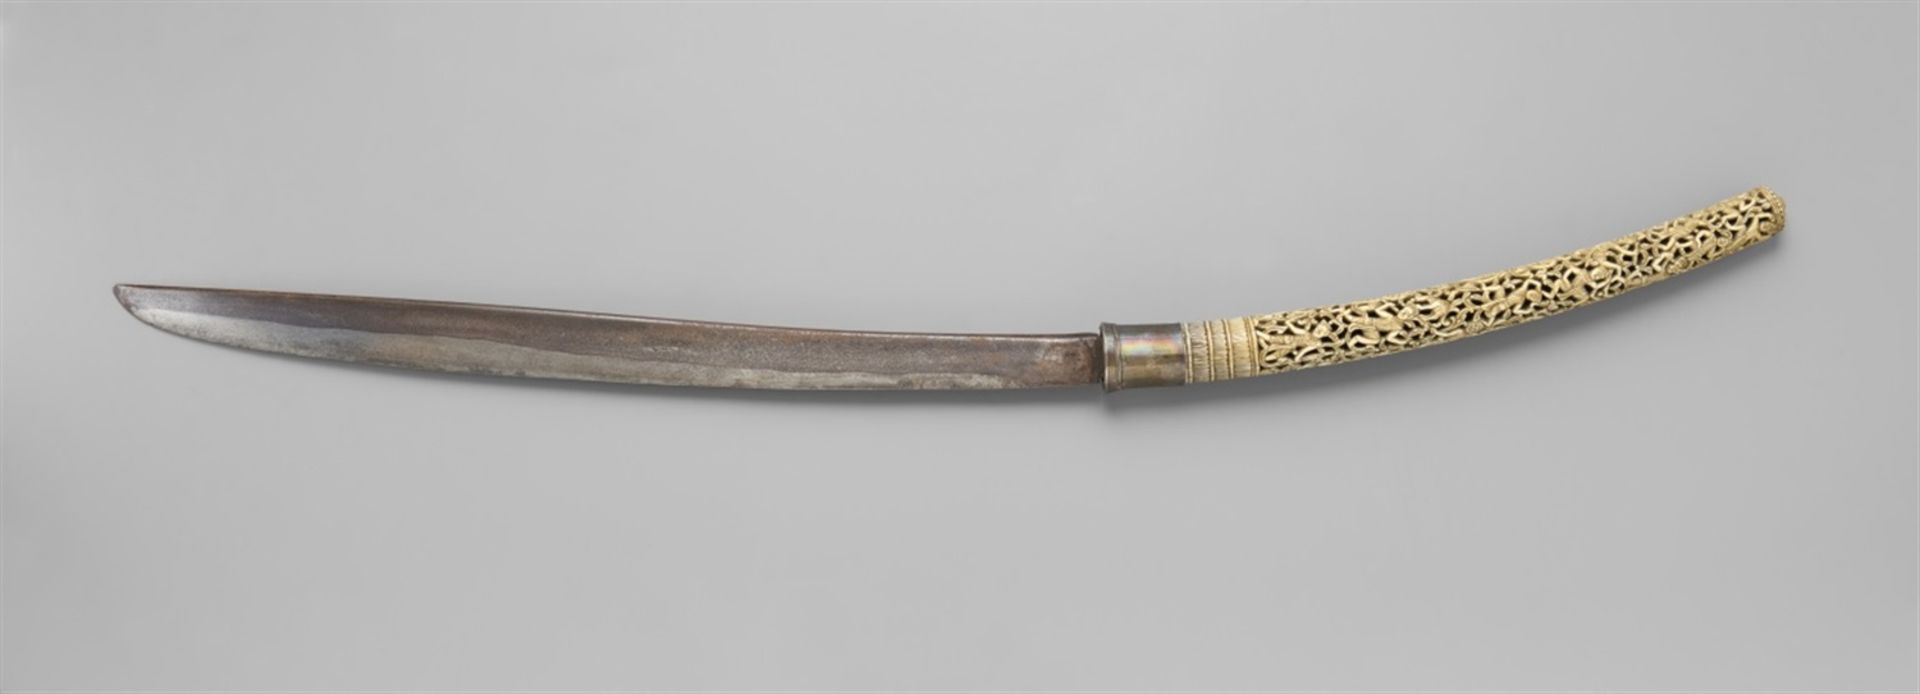 Langes Schwert (dha). Birma 19. Jh. Lange einschneidige, wenig gebogene Stahlklinge. Der lange Griff - Bild 2 aus 2